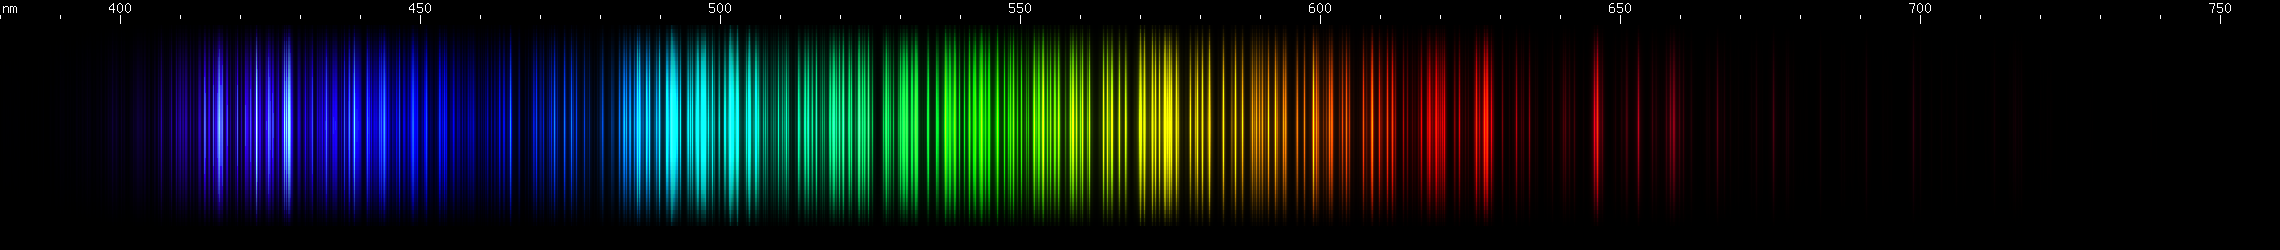 Spectral lines of Thorium.